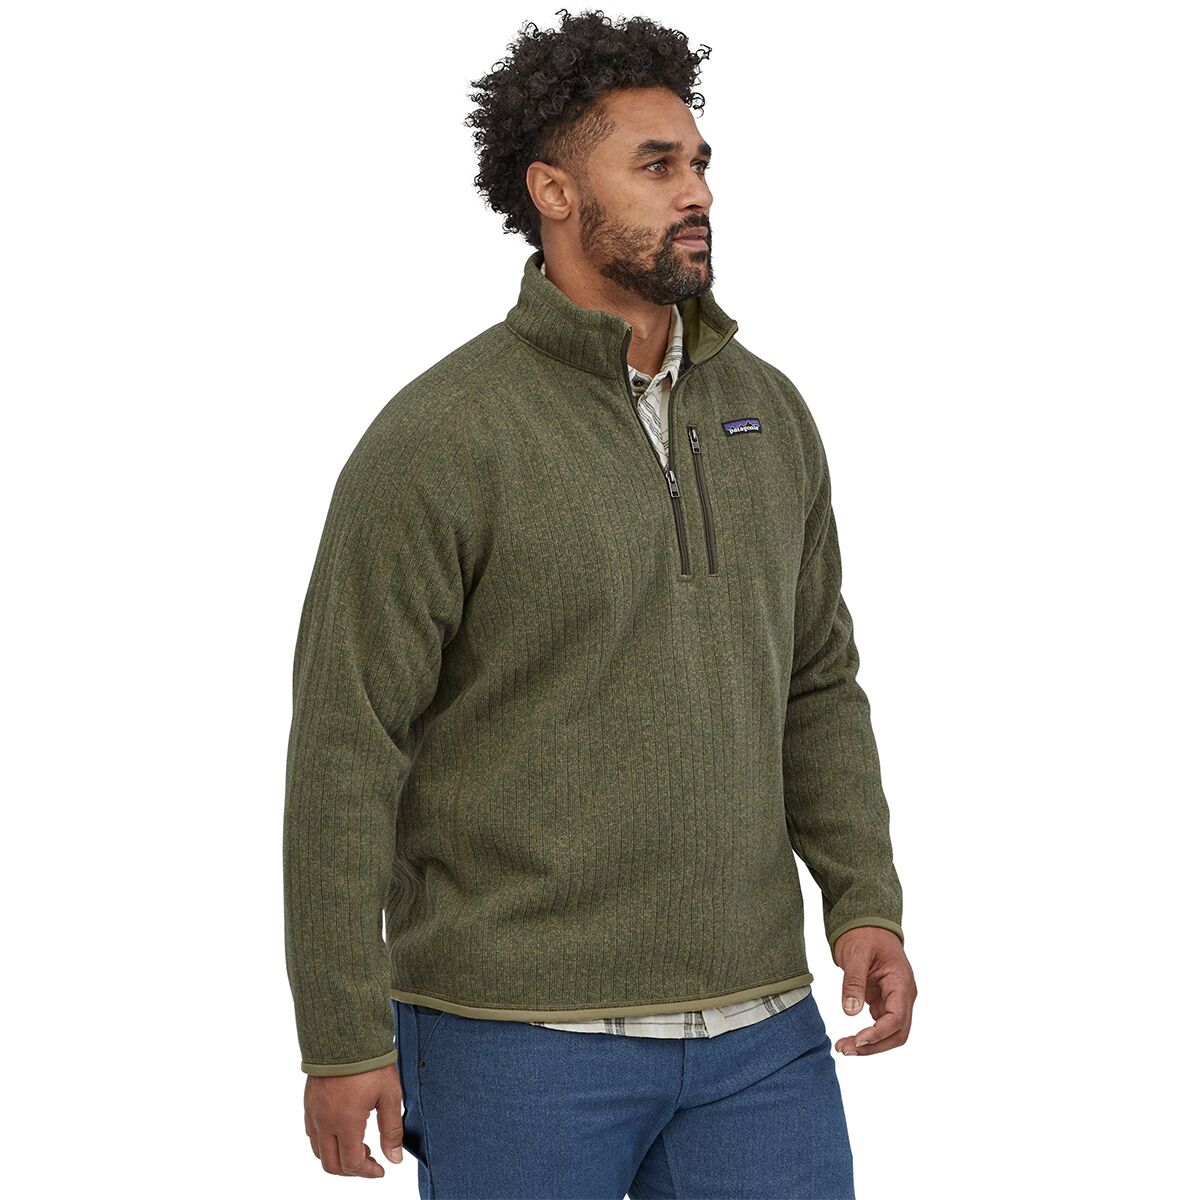 Better Sweater Rib Knit 1/4-Zip Fleece Jacket - Men